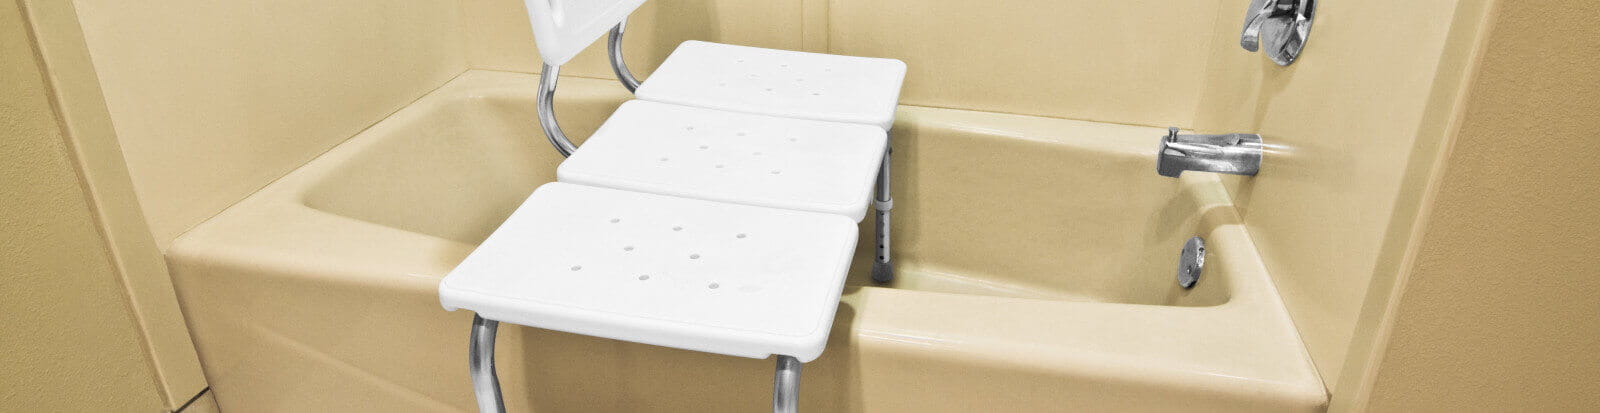 Ein Badewannensitz ist in einer Badewanne montiert